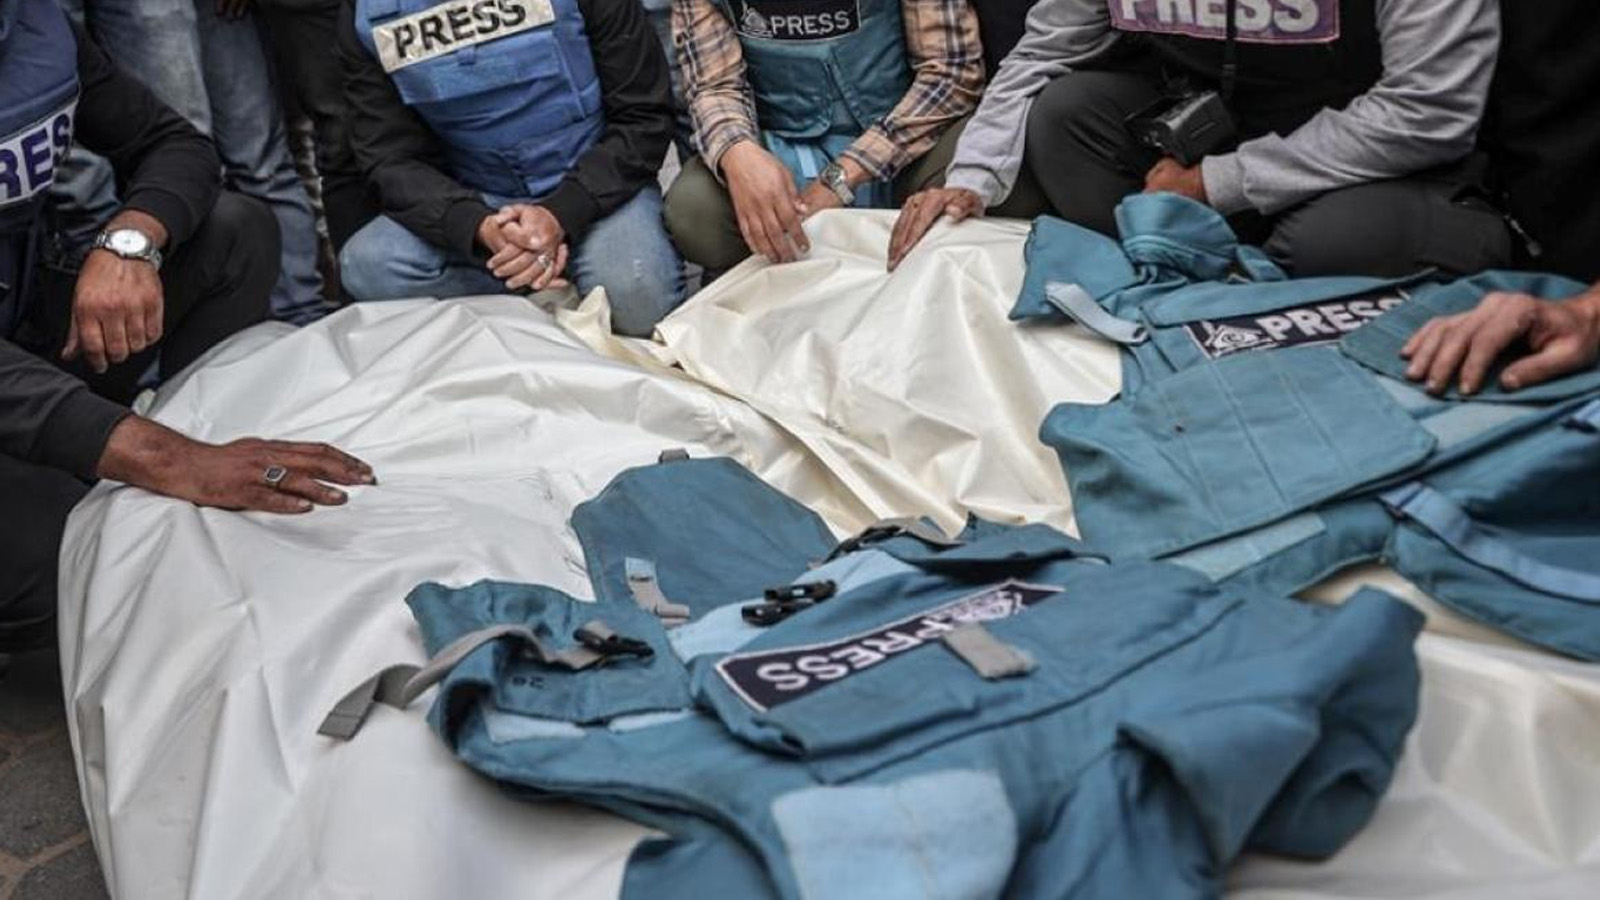 Uluslararası Ceza Mahkemesi, Gazze’de gazetecilere yönelik saldırıları soruşturacak: 79 gazeteci hayatını kaybetti